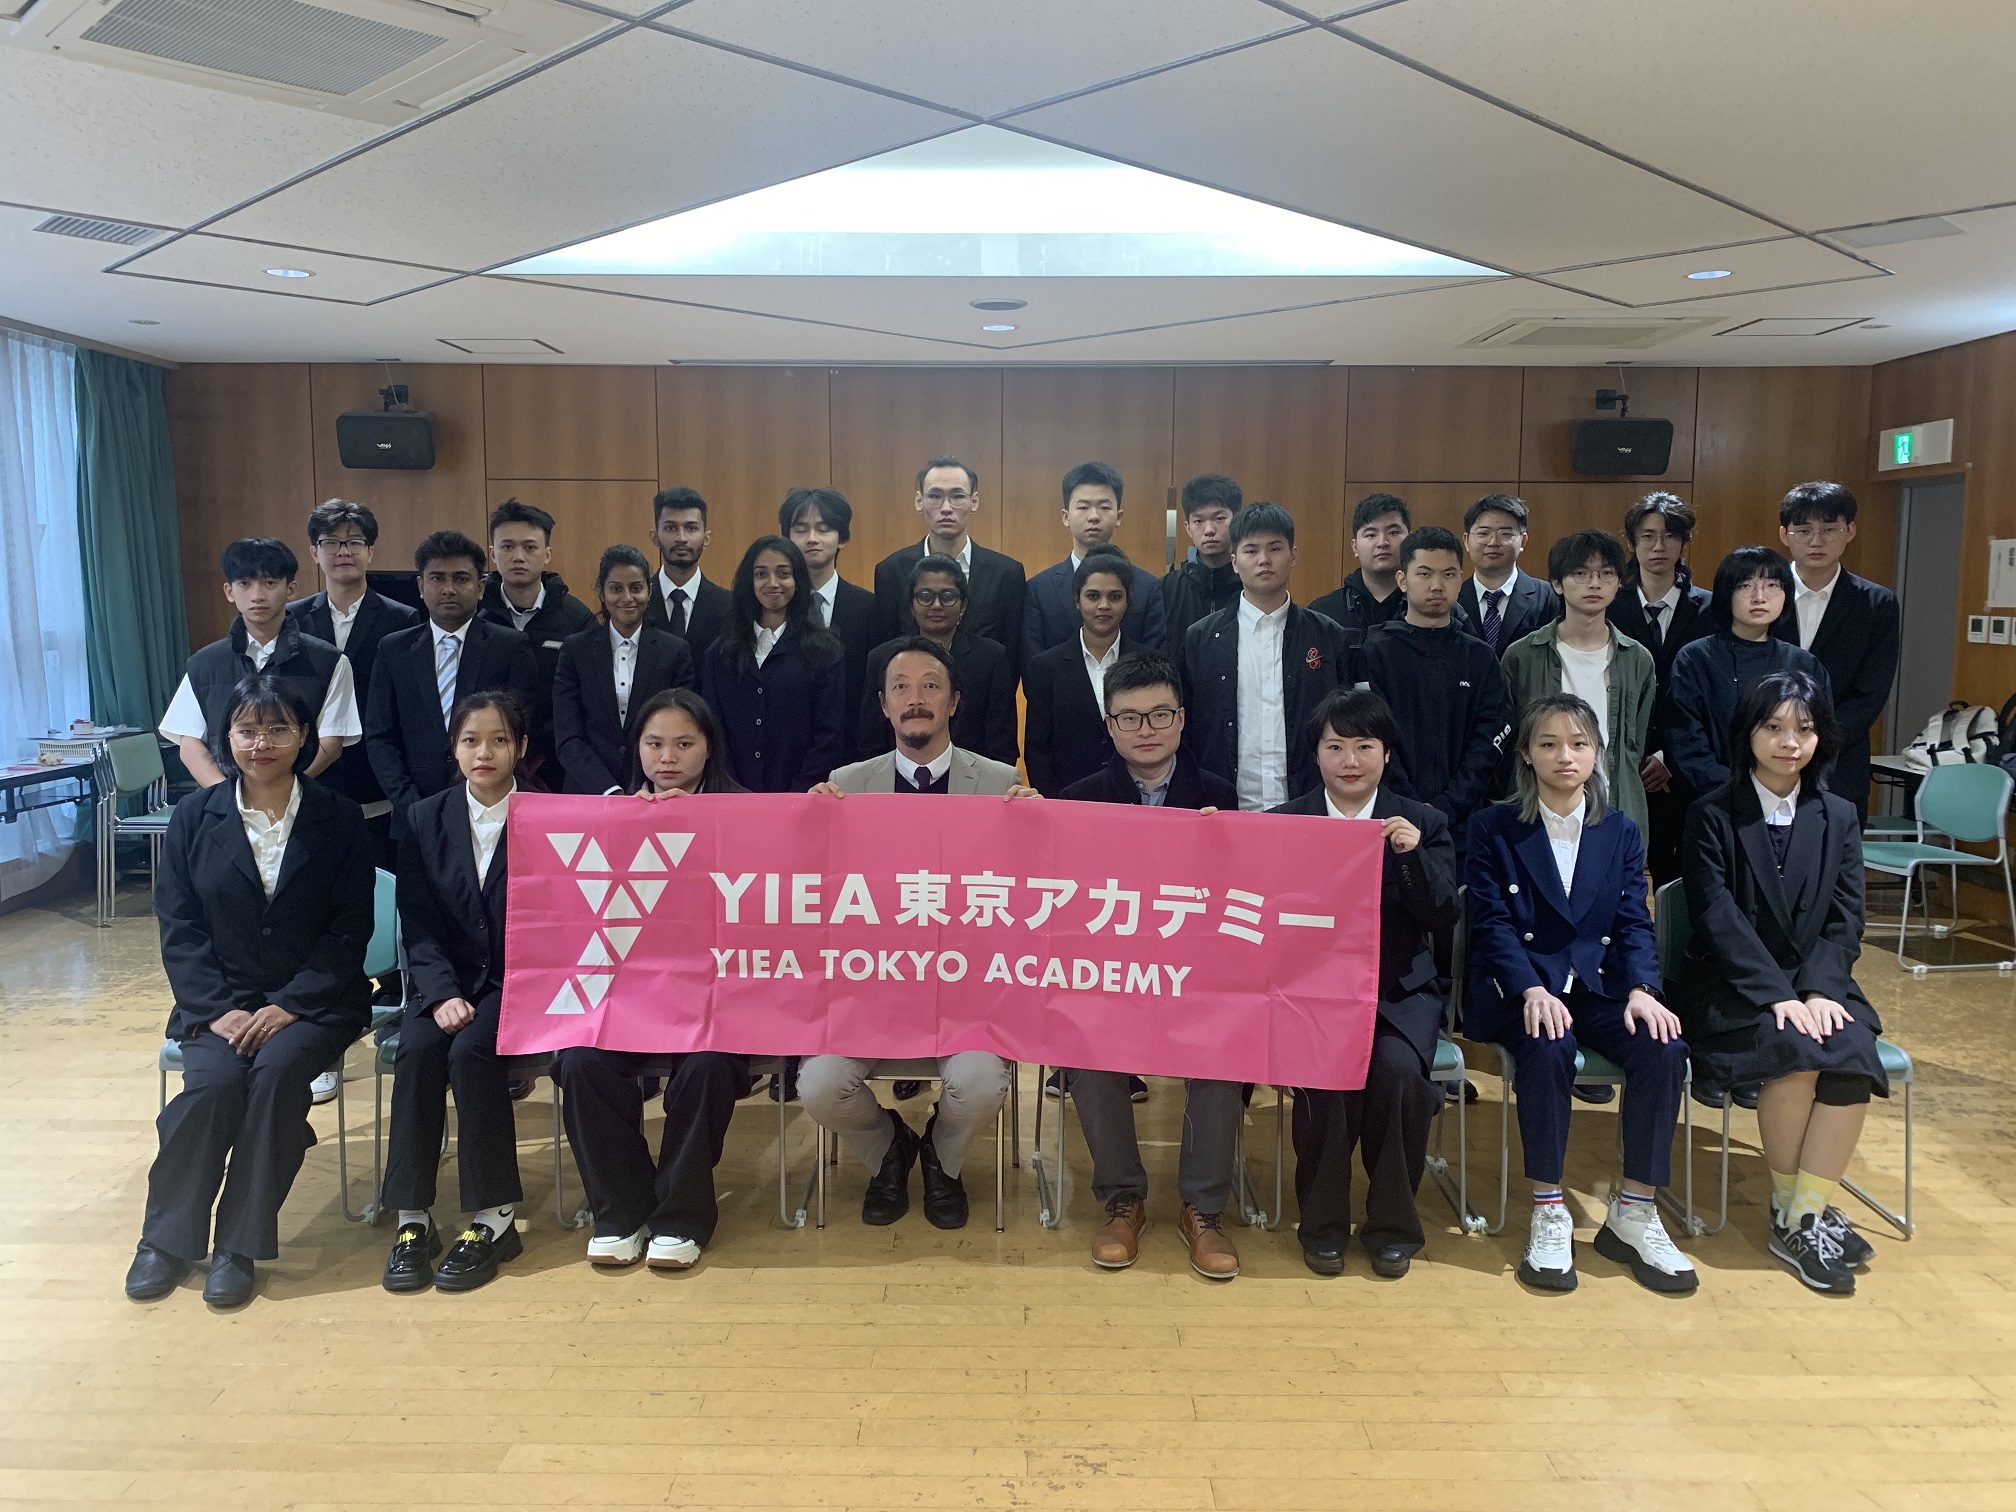 欢迎来到YIEA东京学院！